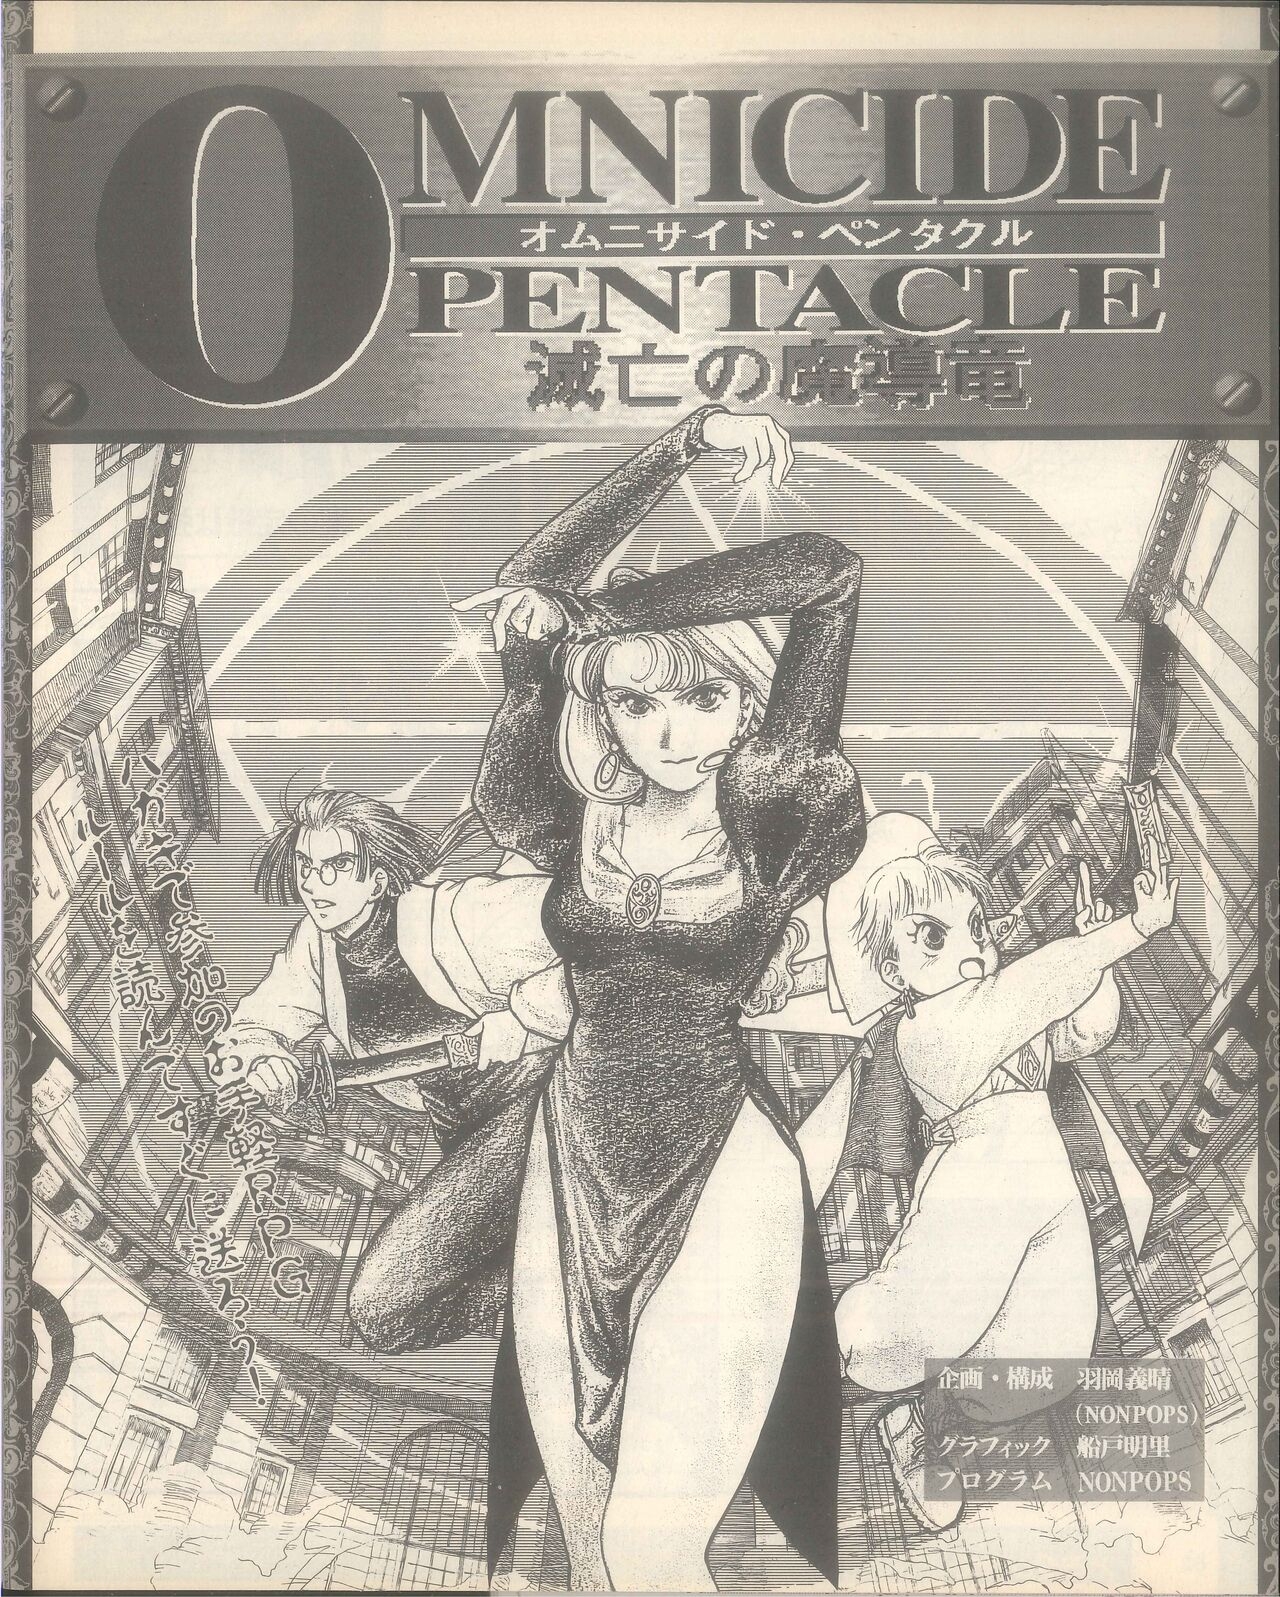 Dengeki Mega Drive Vol.2 (Sega Genesis) (April 1993) 26